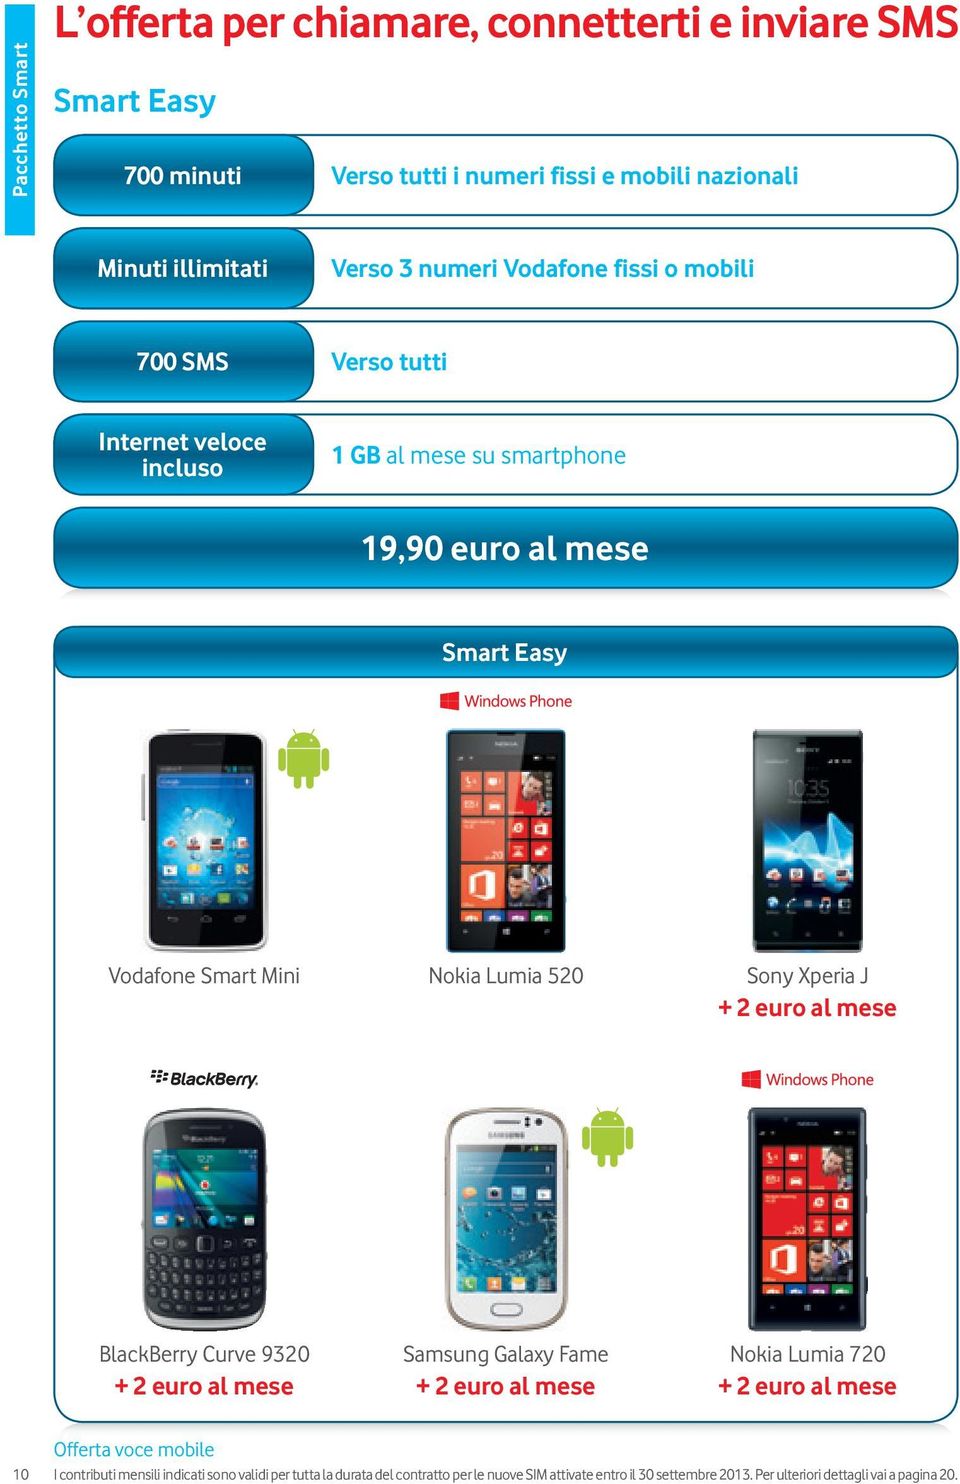 520 Sony Xperia J + 2 euro al mese BlackBerry Curve 9320 Samsung Galaxy Fame Nokia Lumia 720 + 2 euro al mese + 2 euro al mese + 2 euro al mese 10 Offerta voce